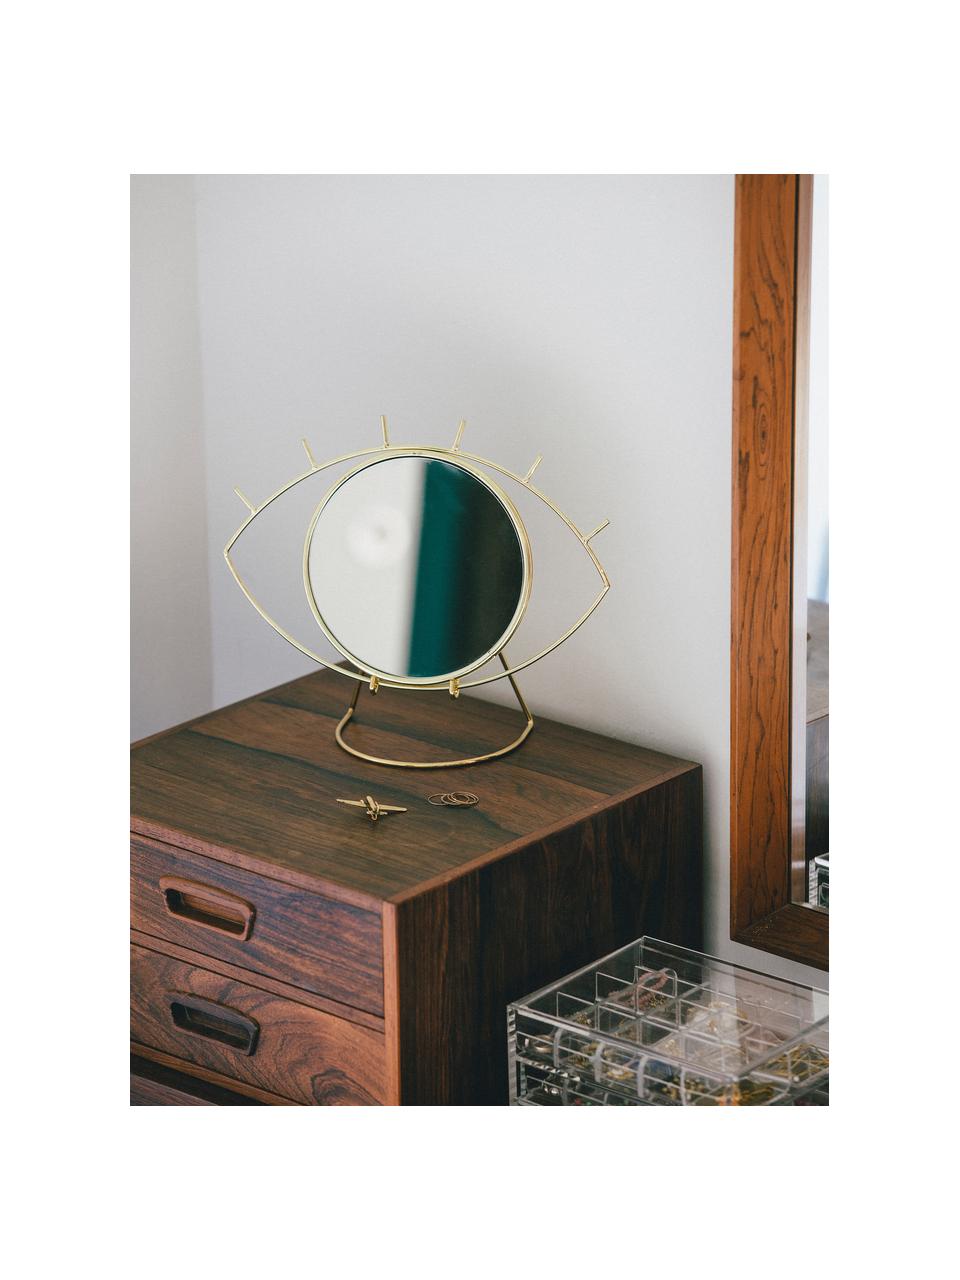 Kosmetikspiegel Lashes mit goldenem Edelstahlrahmen, Spiegelfläche: Spiegelglas, Goldfarben, 26 x 20 cm